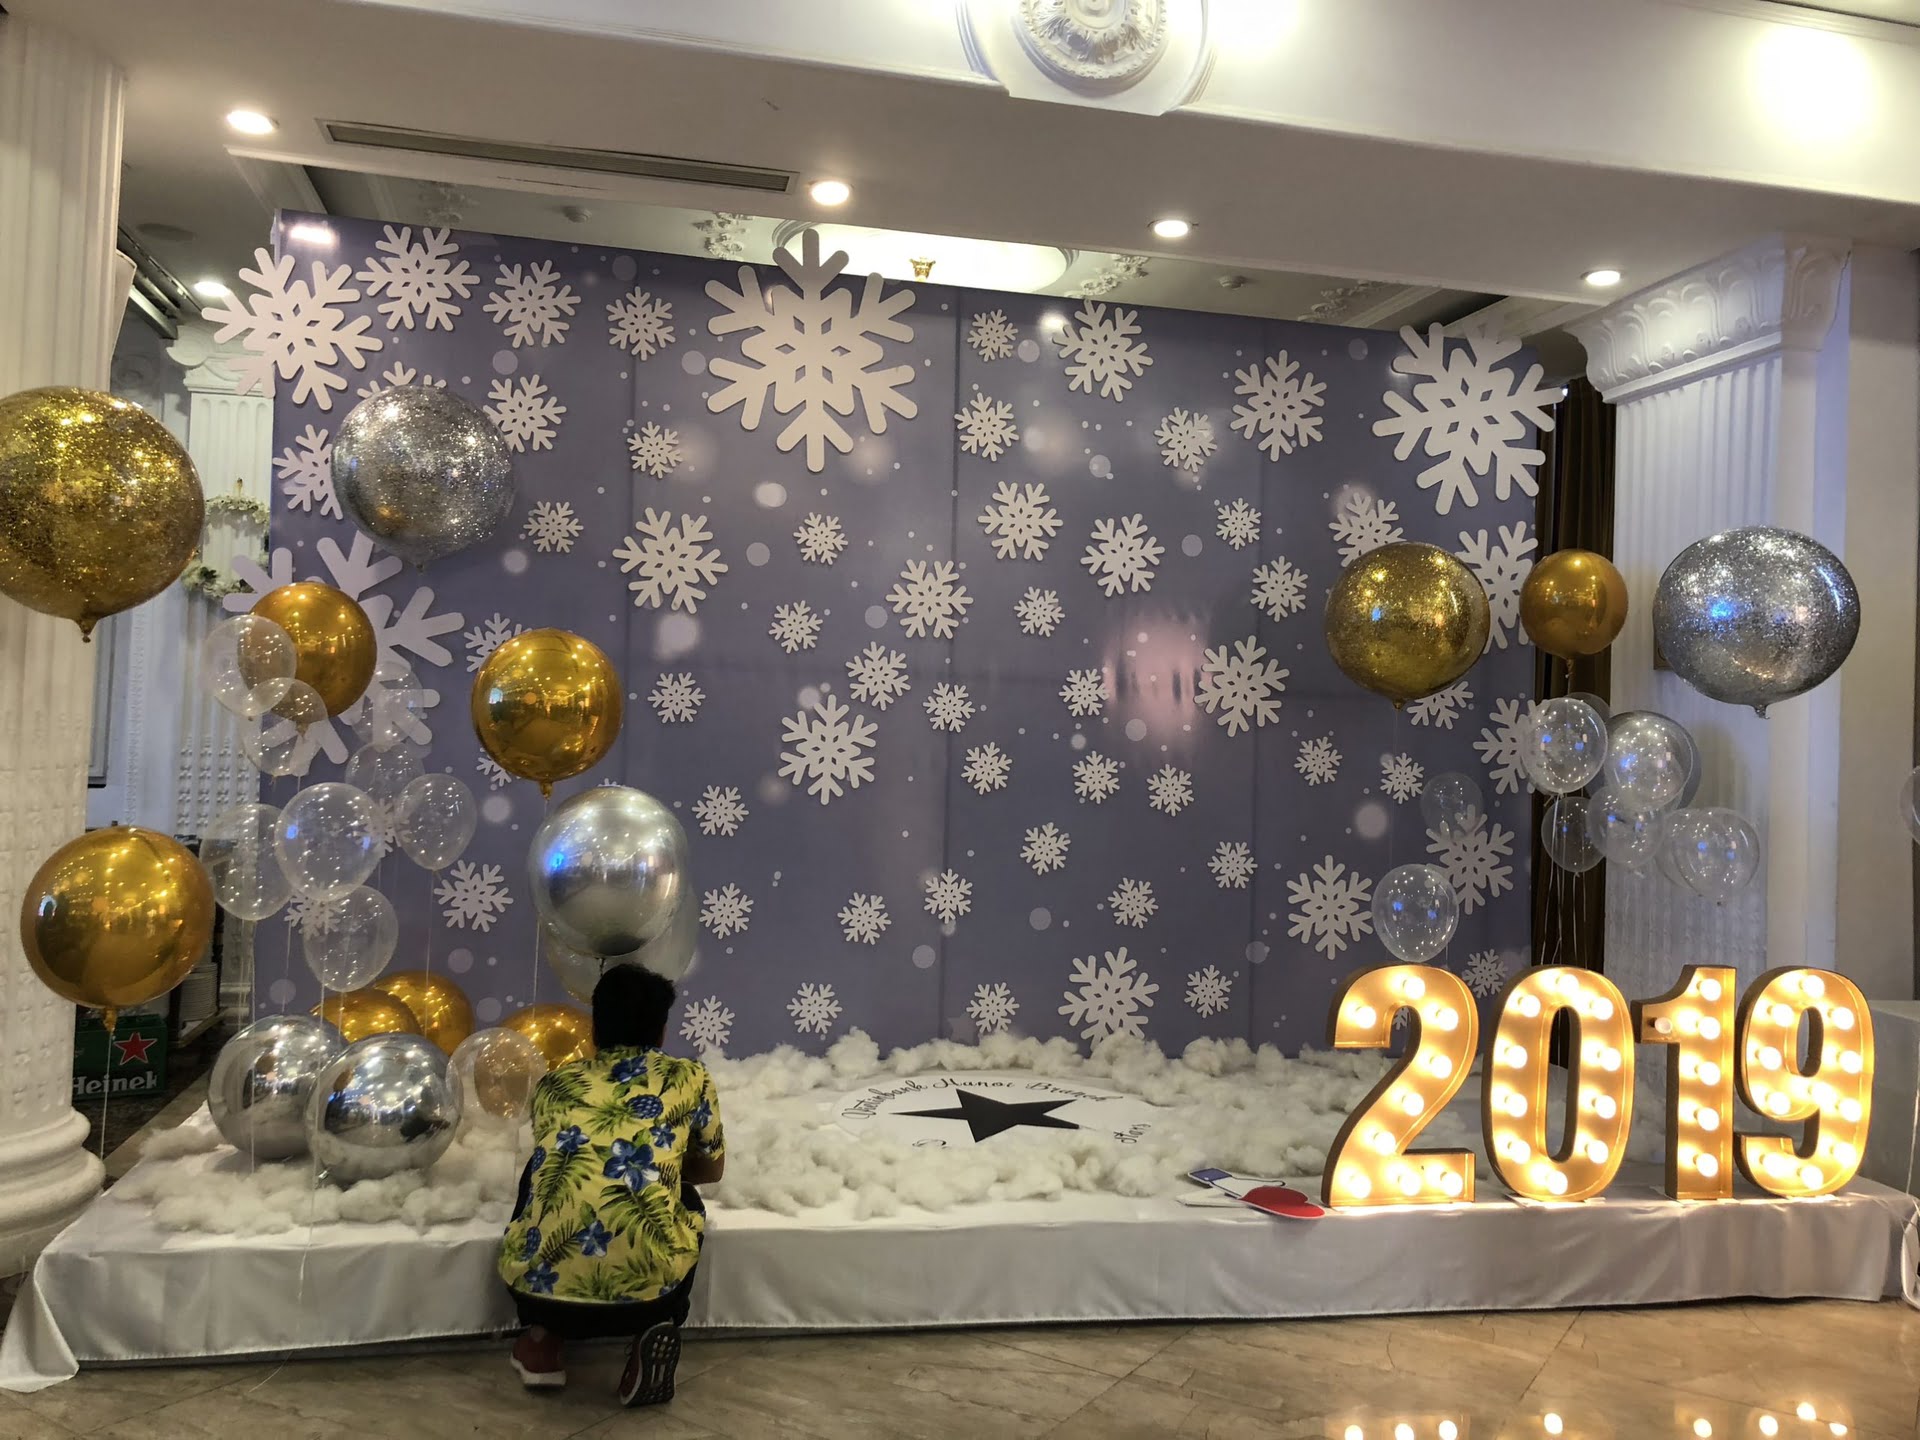 Dịch vụ trang trí Noel giá rẻ tại Hà Nội - Chill decor